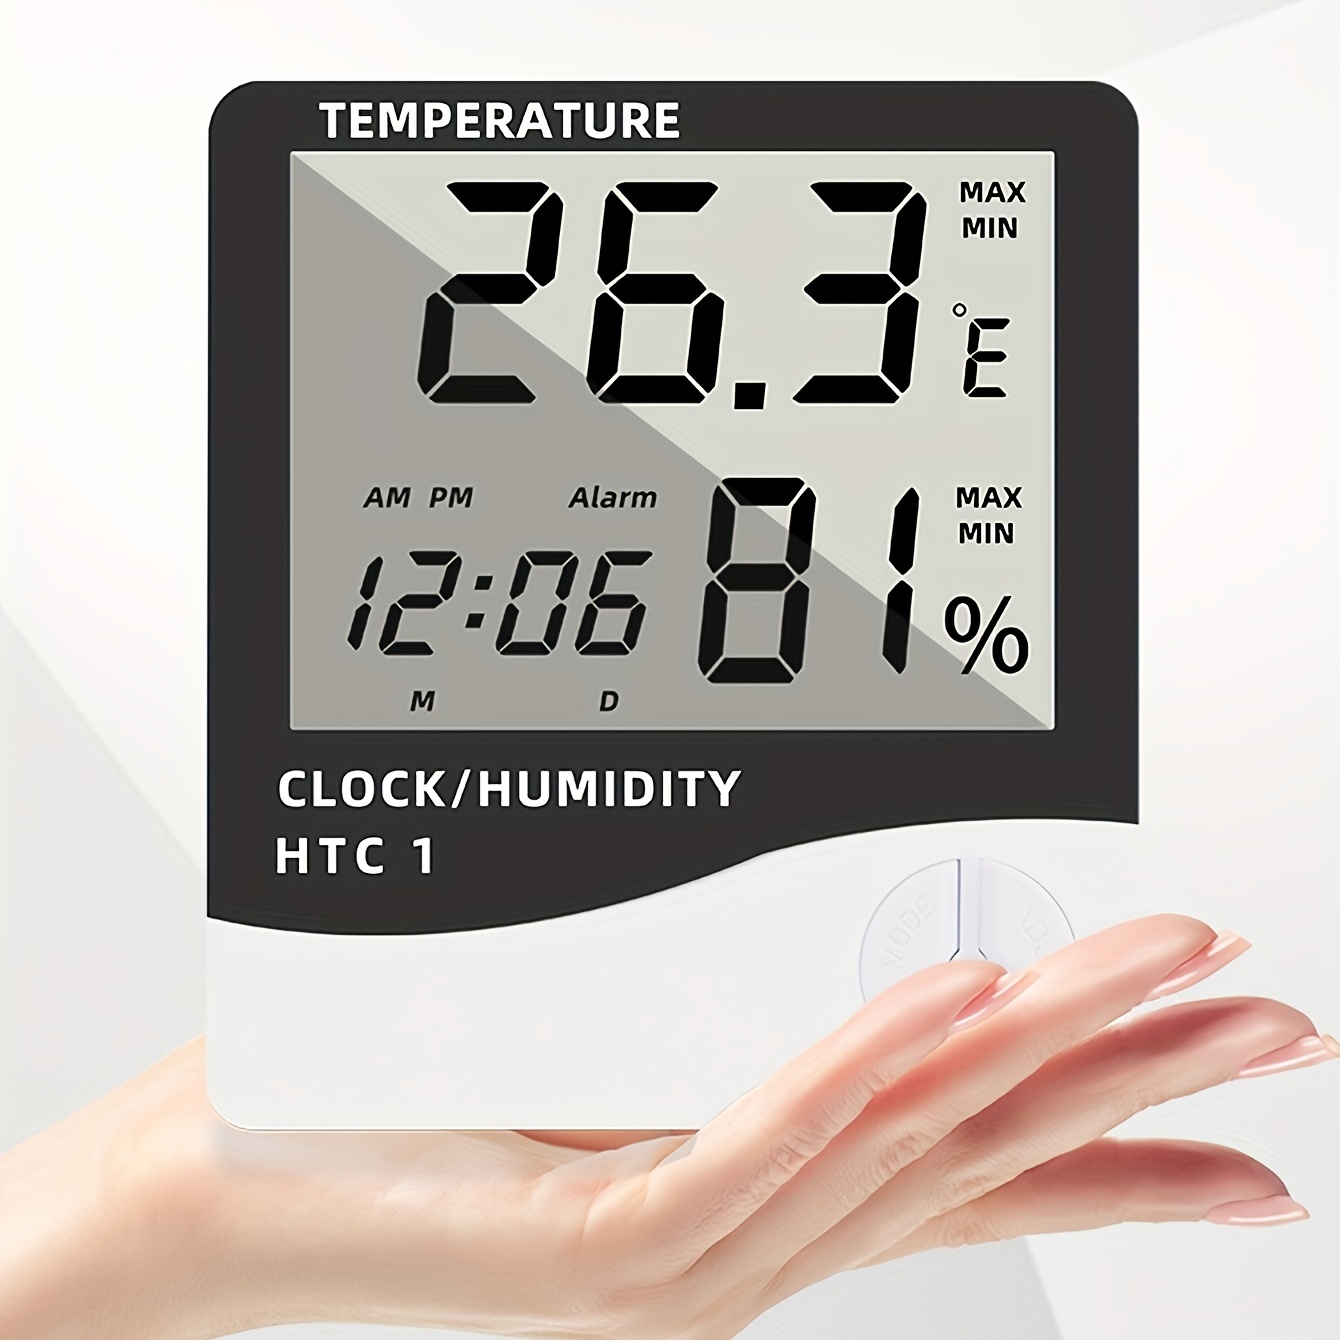 Mini Digital LCD Thermomètre Hygromètre Température Humidité Testeur (5PCS)